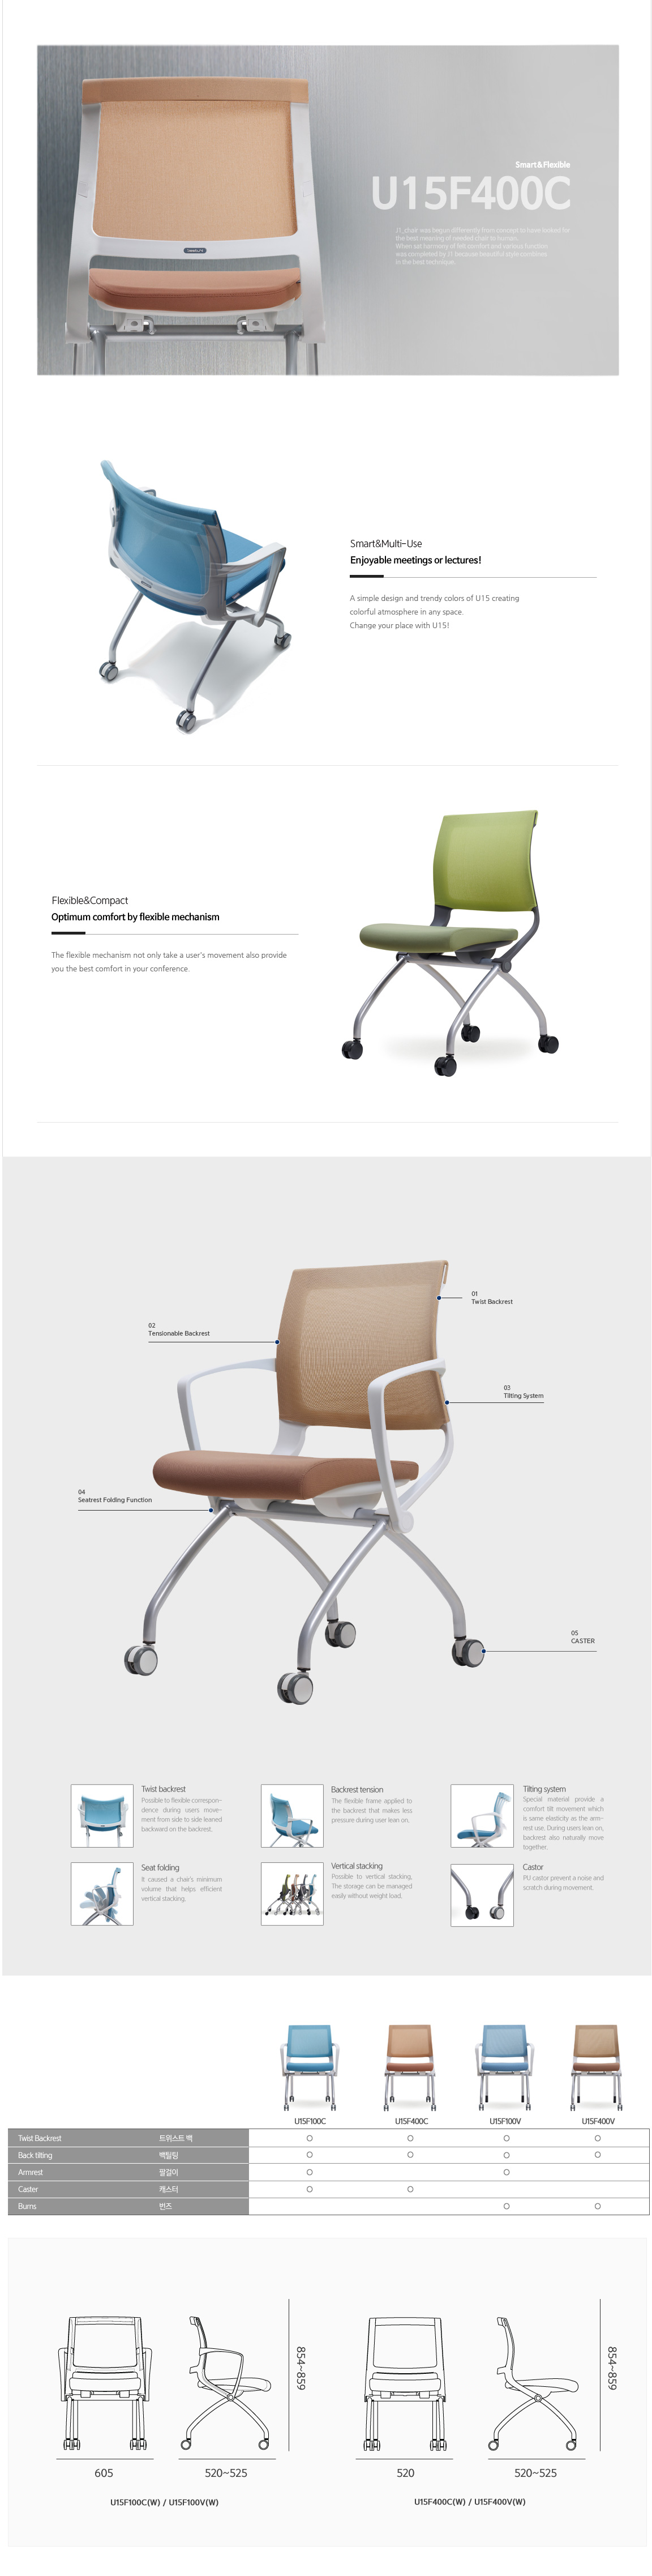 Luxdezine Multipurpose Chairs U15F400C